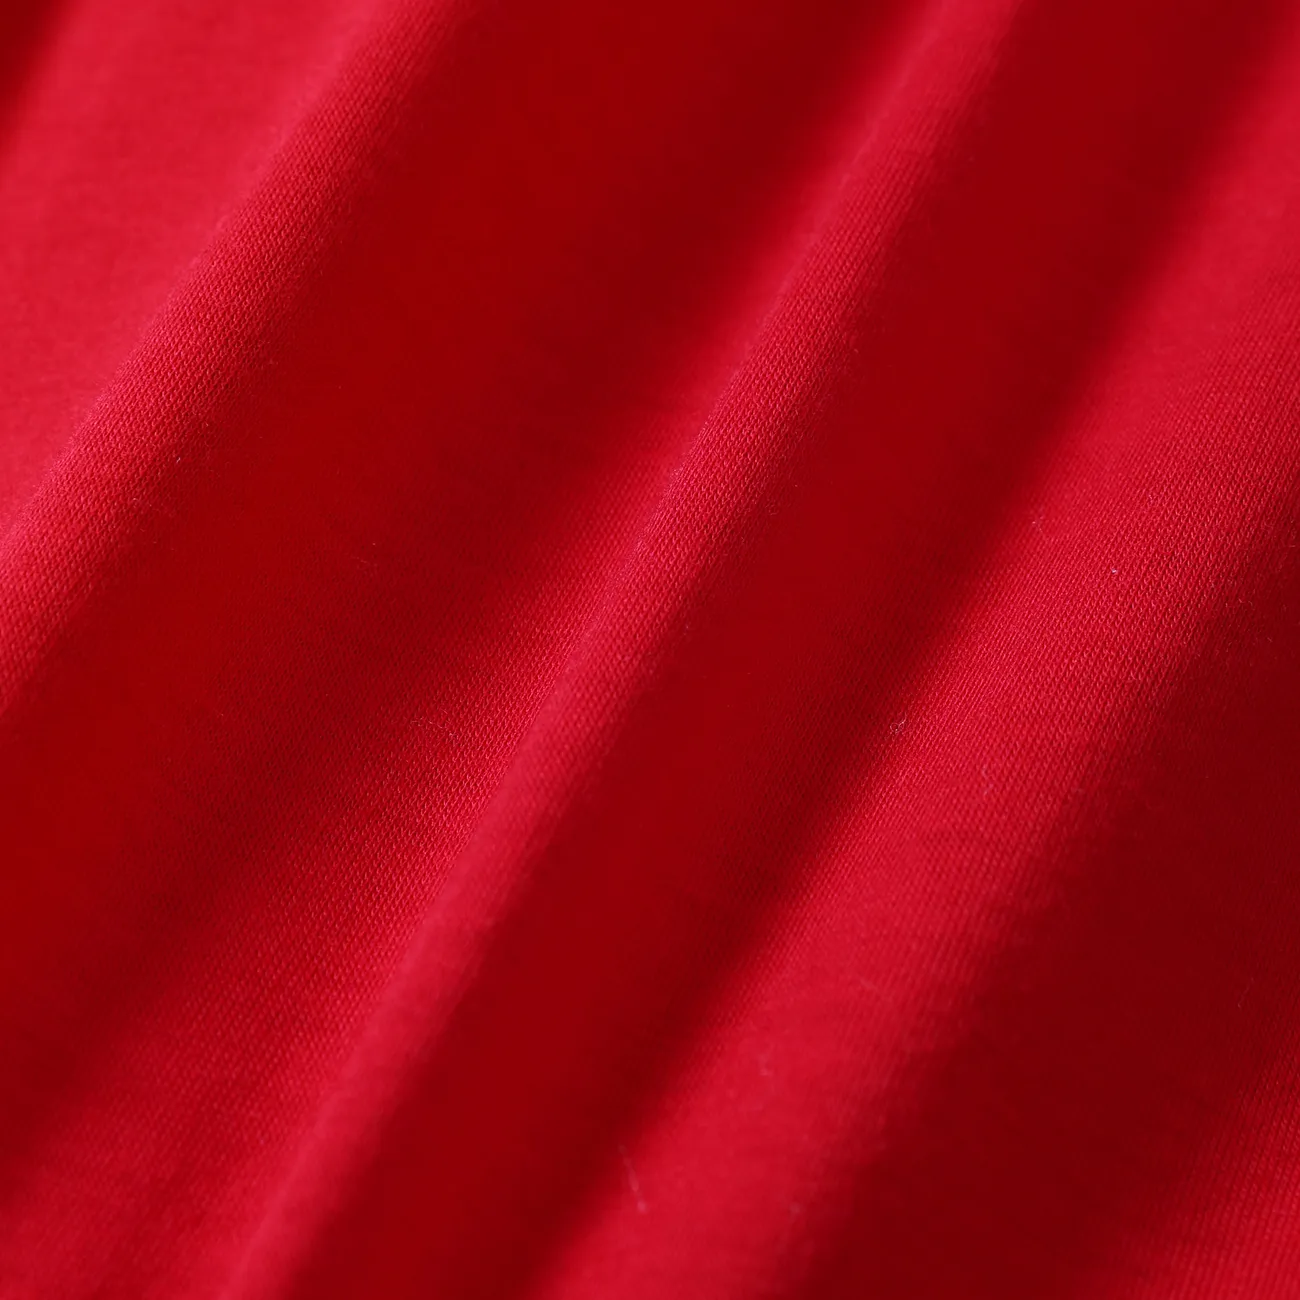 蹣跚學步/兒童男孩/女孩 2 件純色翻領睡衣套裝 紅色 big image 1